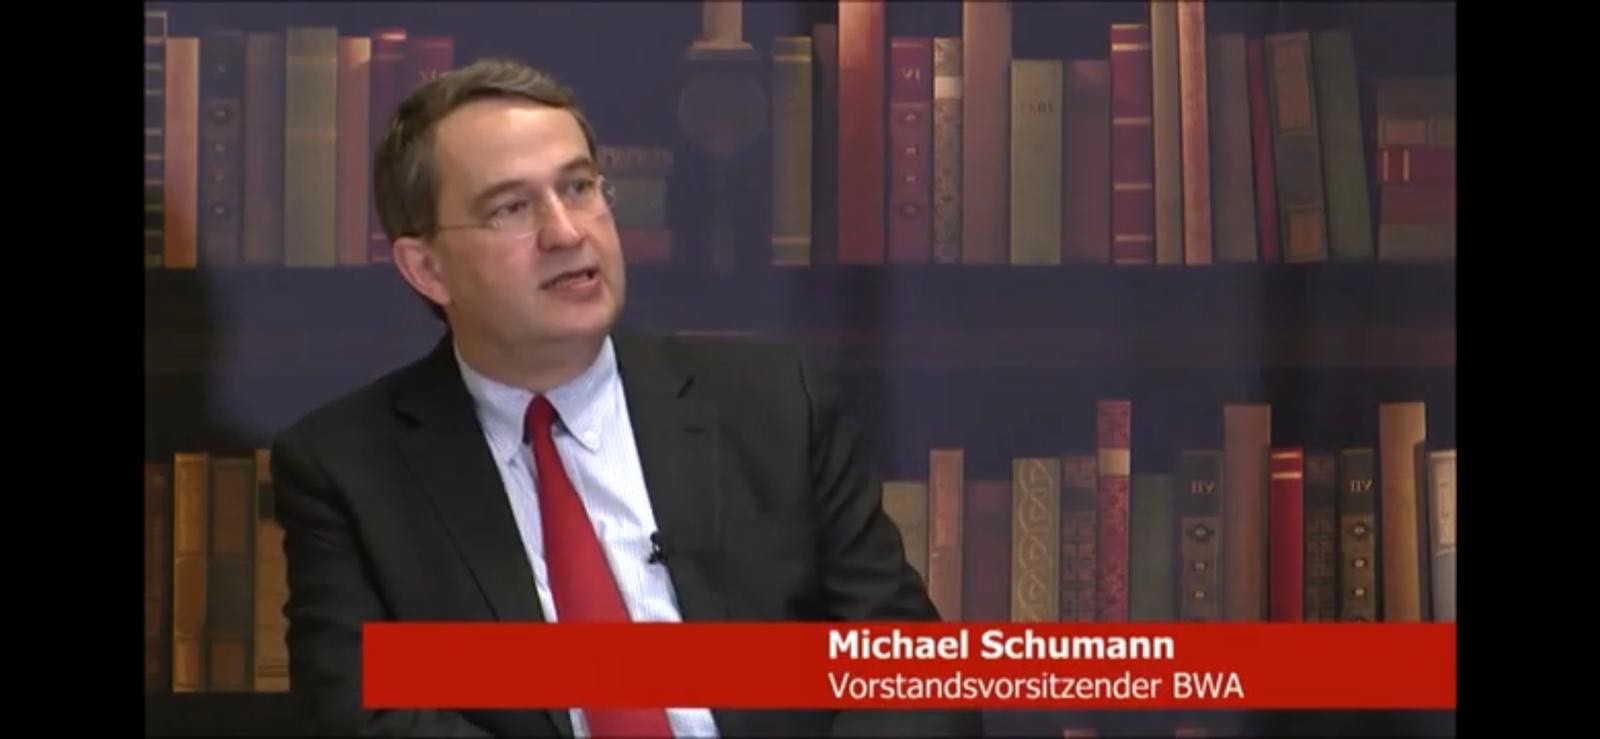 BWA-Vorstandsvorsitzender Michael Schumann im Interview